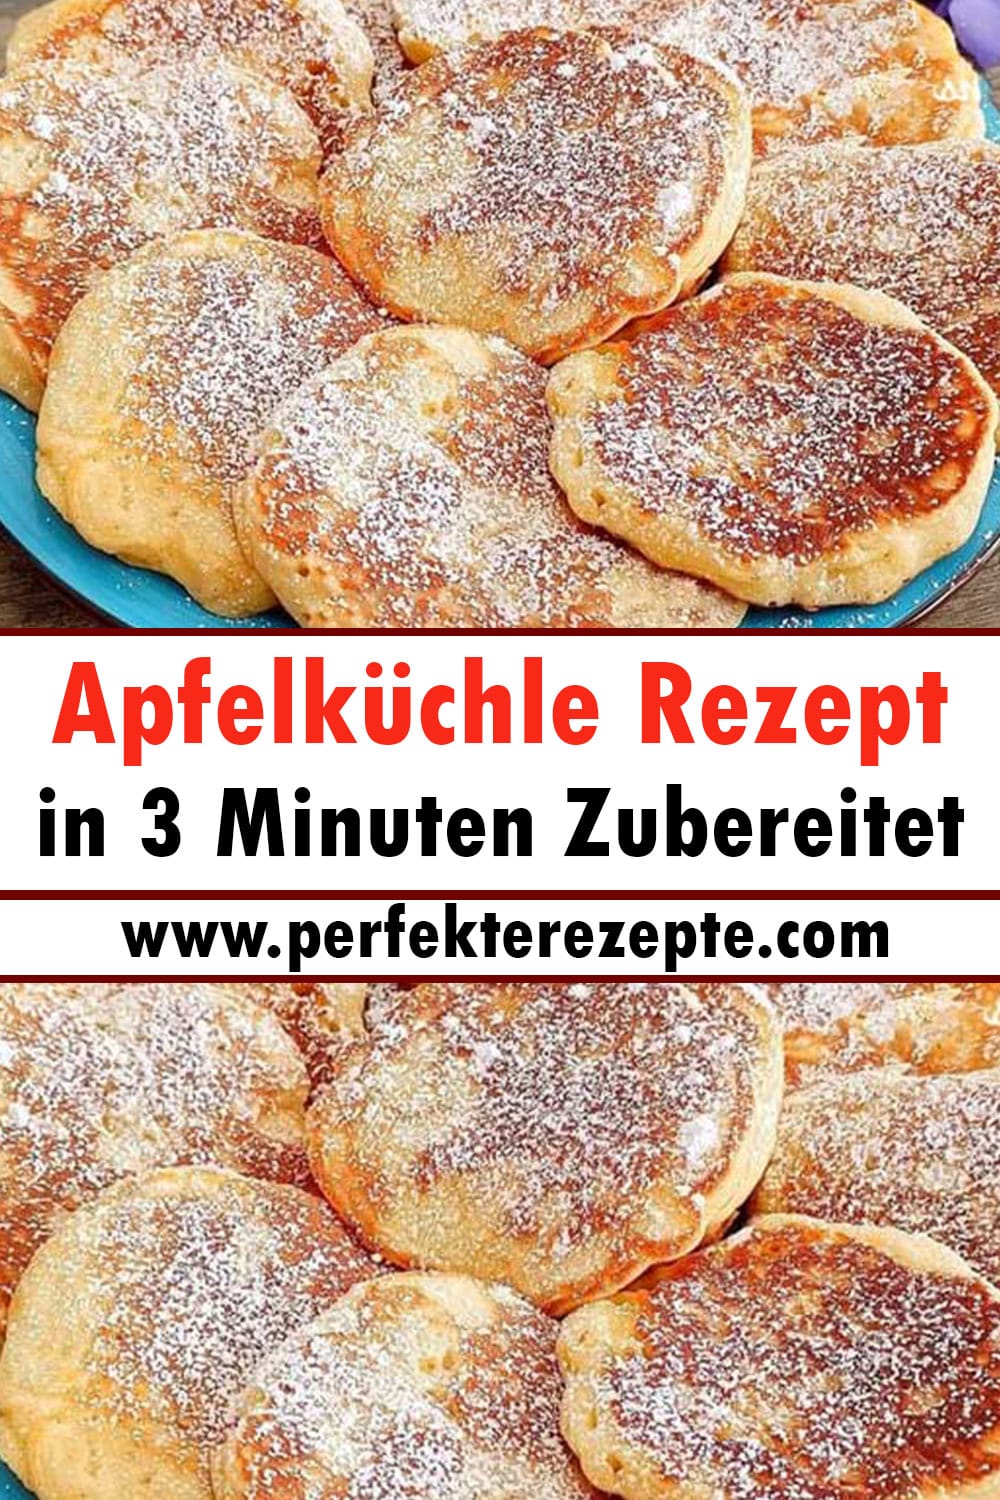 Apfelküchle Rezept in 3 Minuten zubereitet, Superlecker!